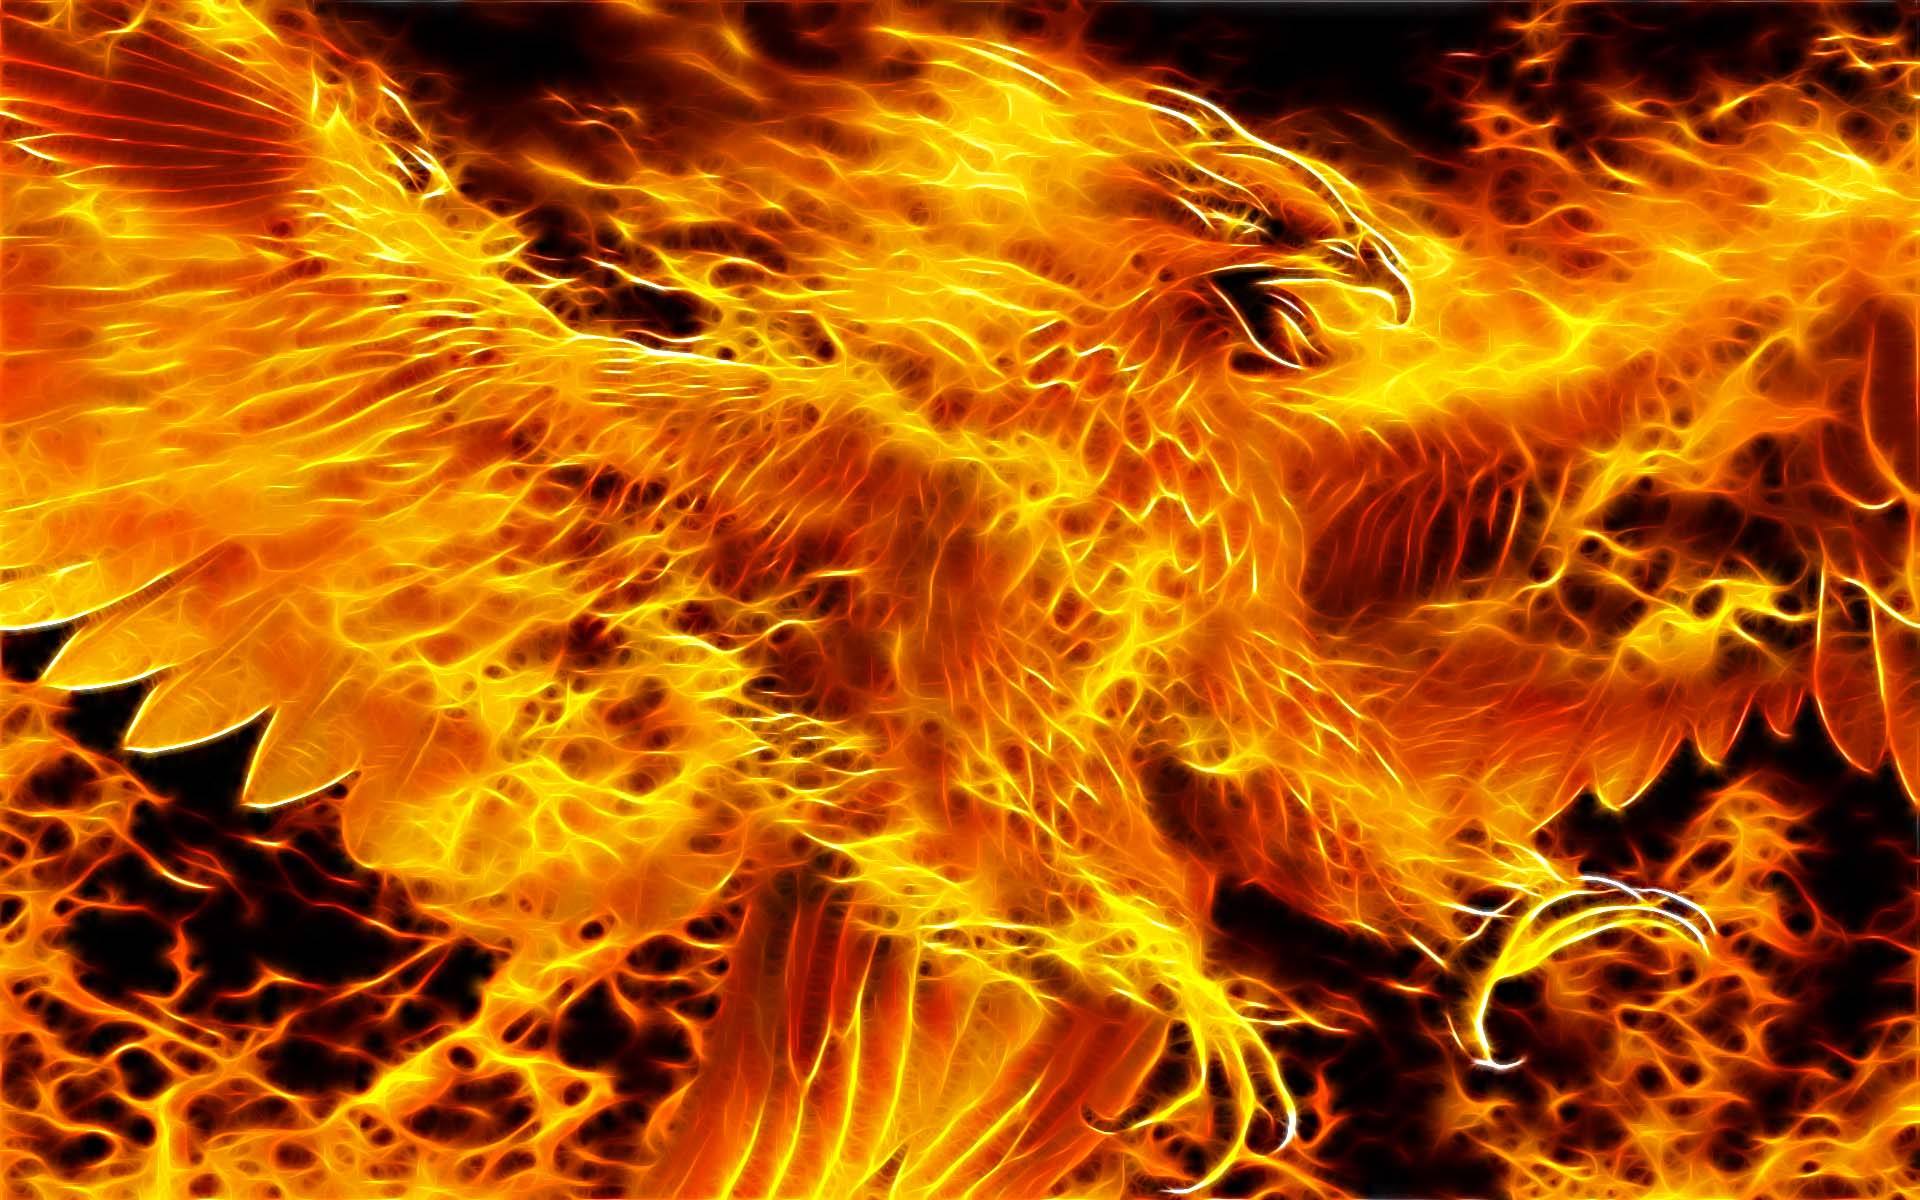 Abstract Beauty Phoenix Fire Blaze Heat Of Photoboats